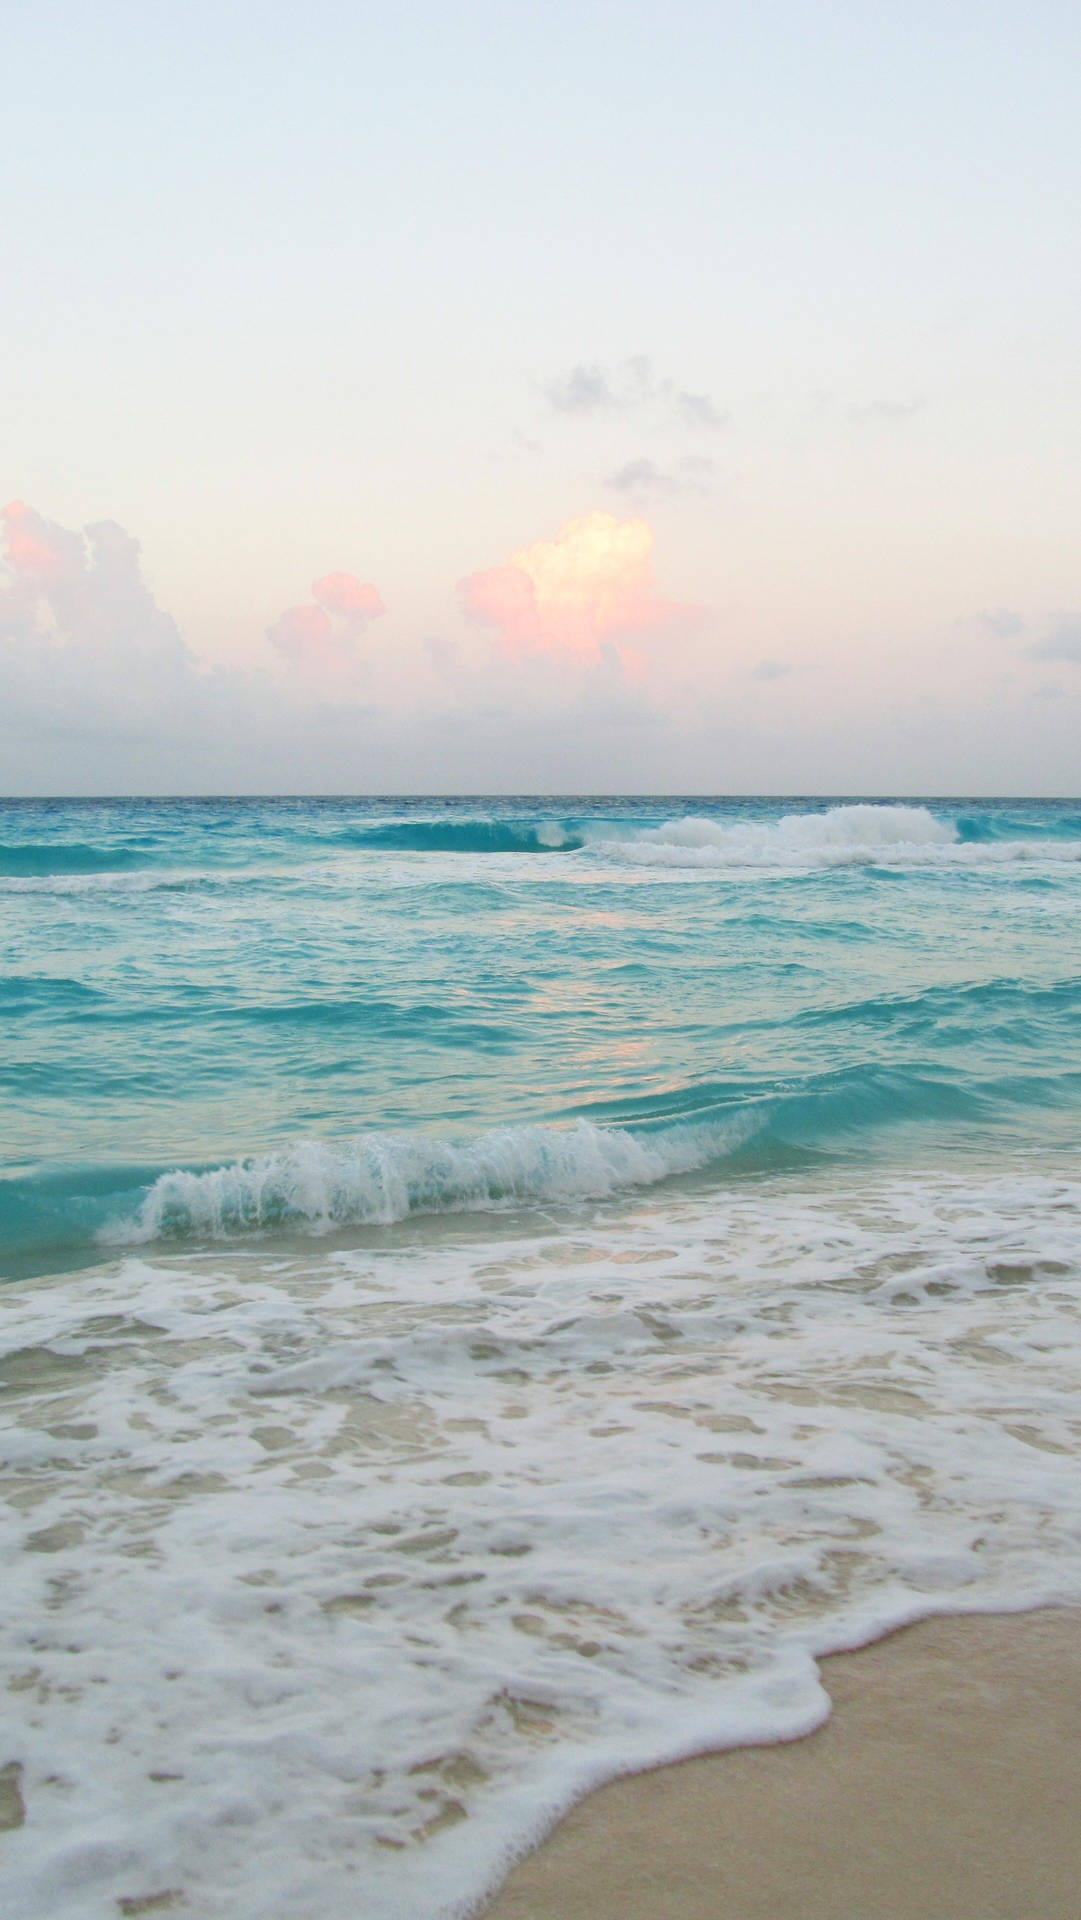 A stunning ocean wave overlooking a beautiful beach. Wallpaper